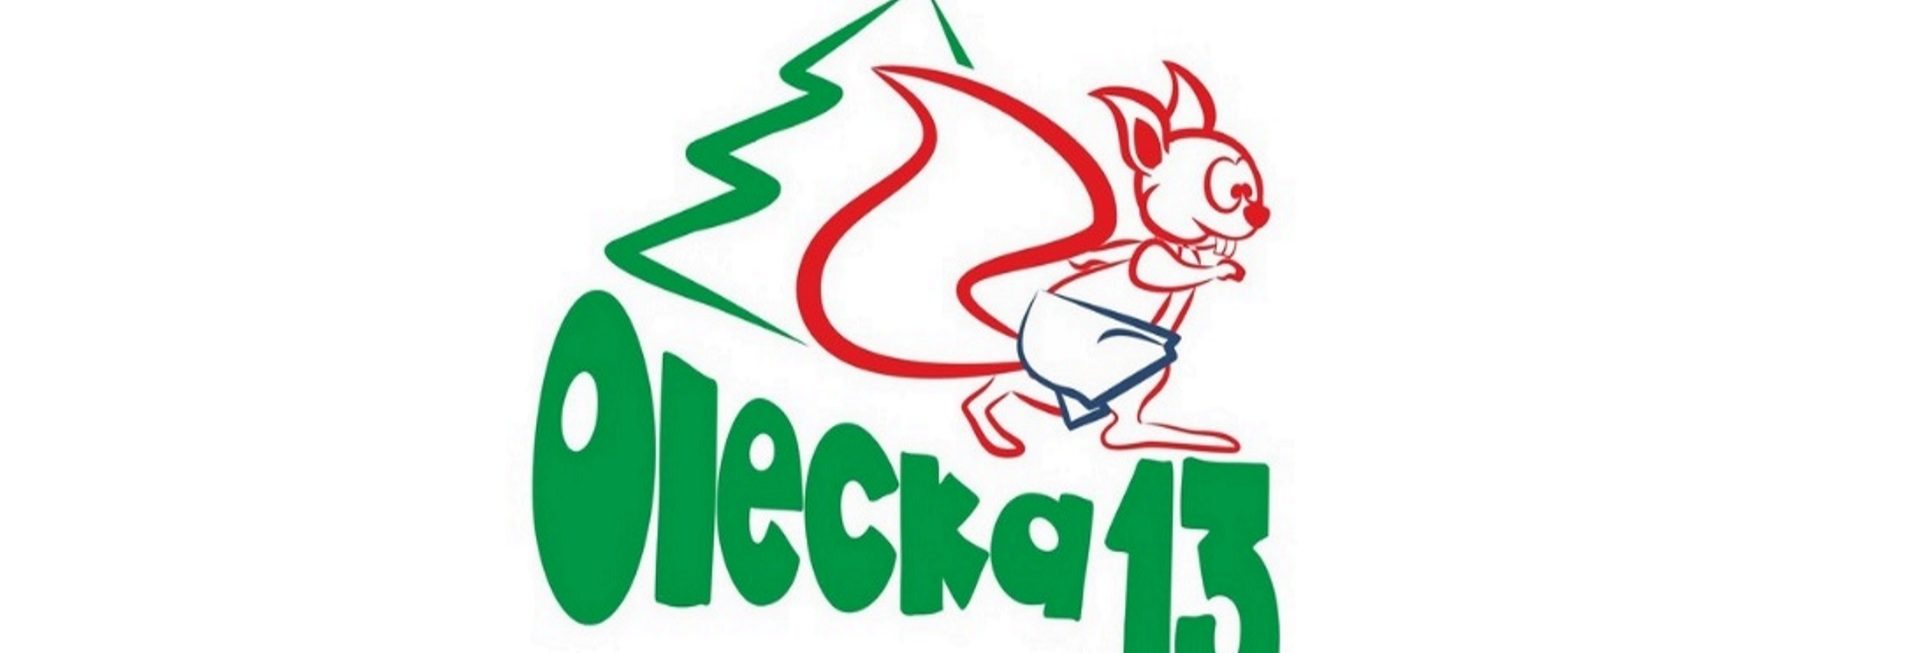 Plakat zapraszający do Olecka na 8. edycję Oleckiej Trzynastki. Grafika przedstawia napis Olecka trzynastka oraz graficzny rysunek wiewiórki.  